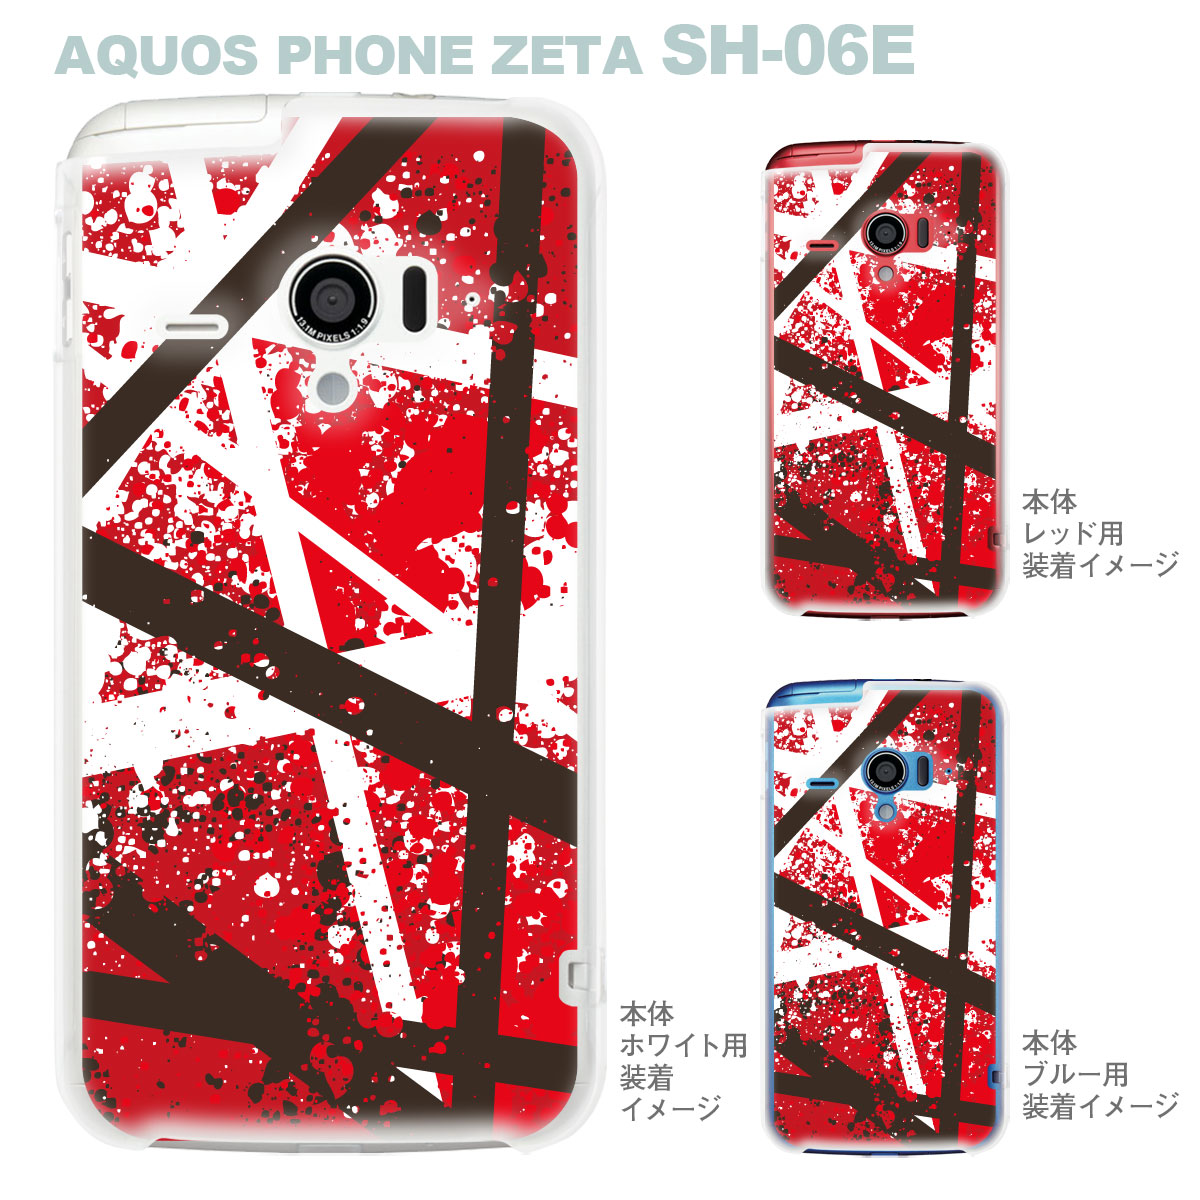 楽天市場 Aquos Phone Zeta Sh 06e Igzo イグゾー ケース カバー スマホケース クリアケース ミュージック ヴァンヘイレン 08 Sh06e An109 Tk Jiang